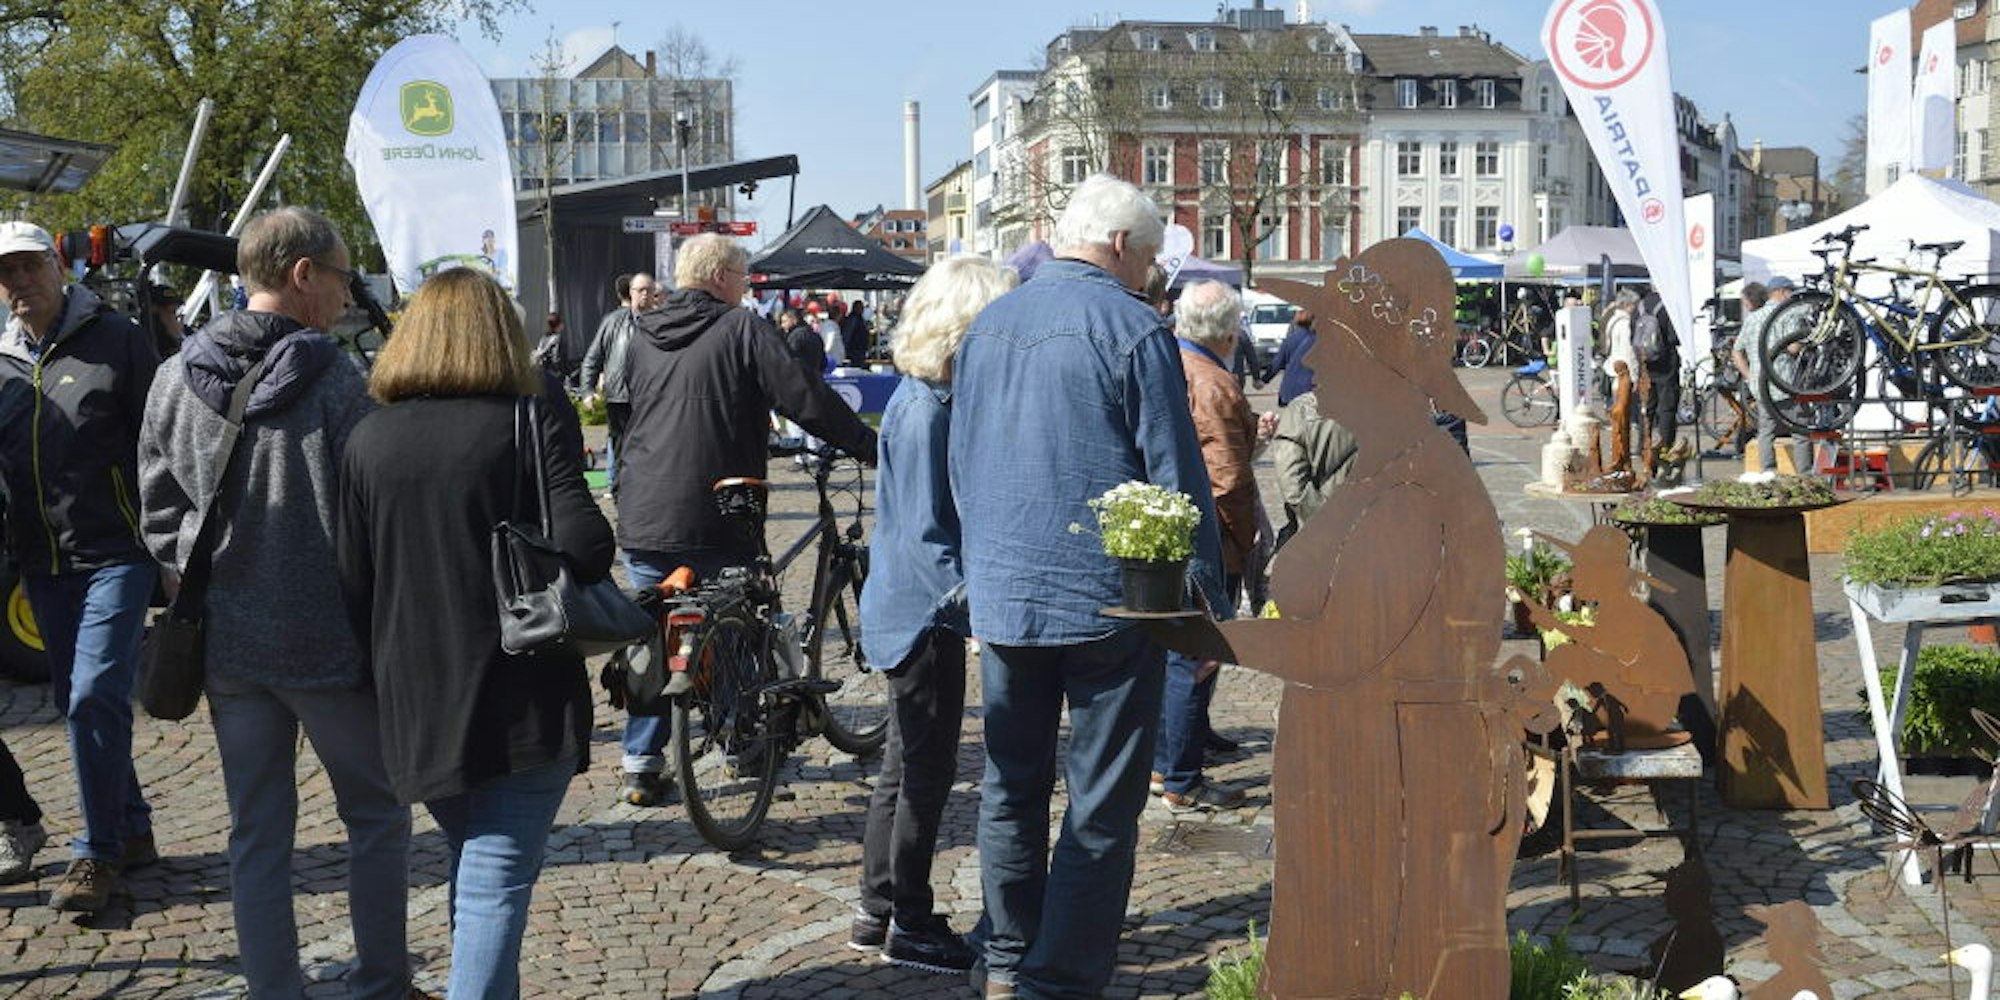 Da war die Welt noch in Ordnung: Besucher beim Frühlingsfest 2019 auf dem Konrad-Adenauer-Platz in Gladbach.